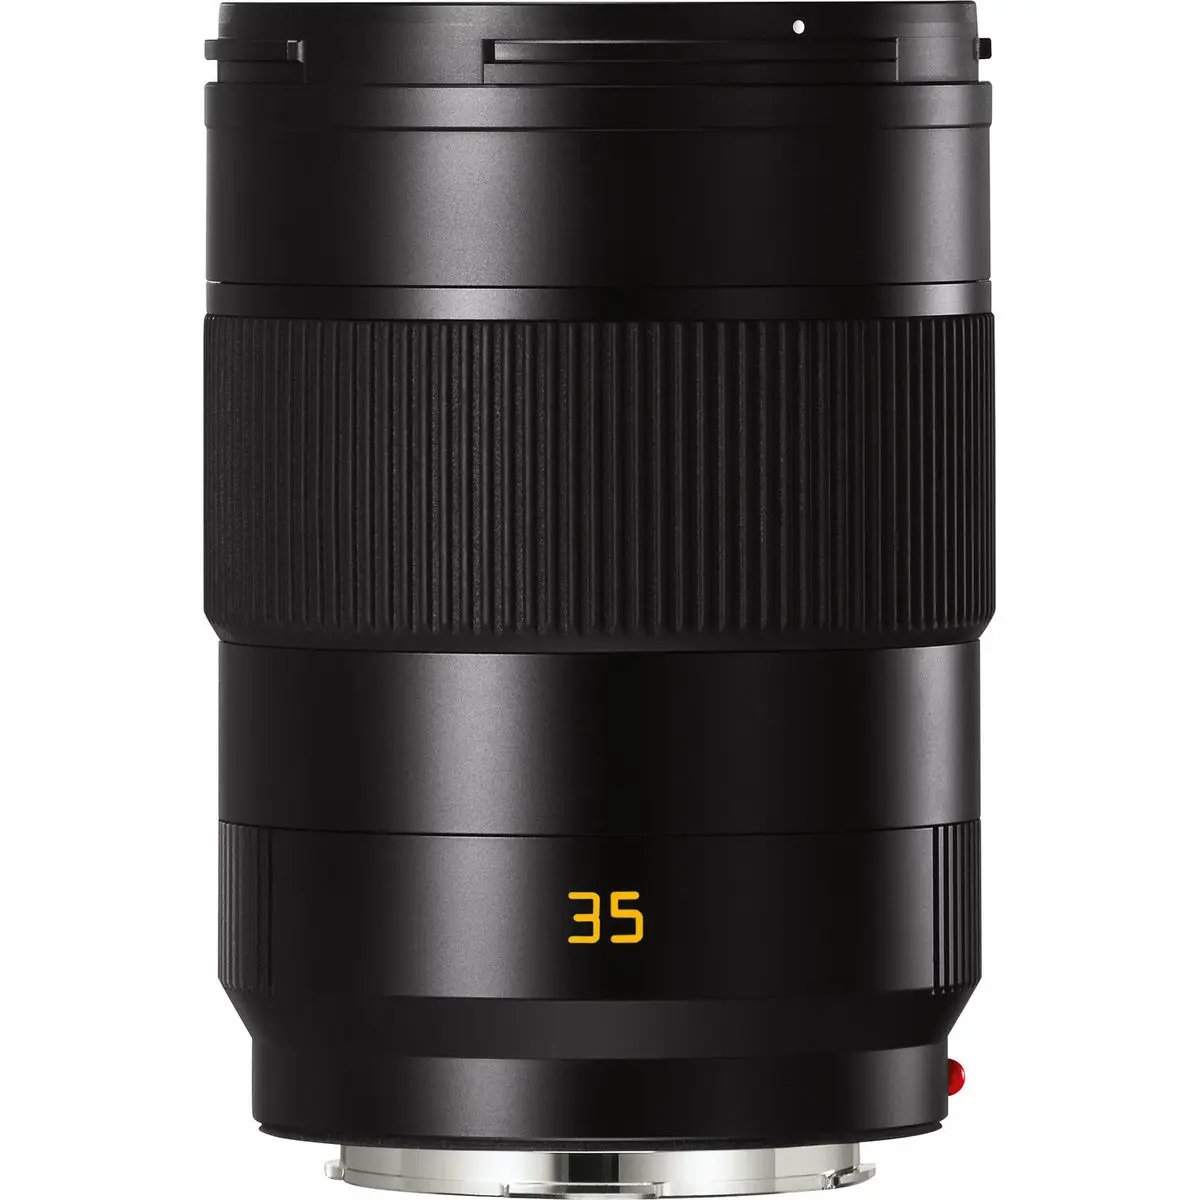 1. Leica APO-Summicron-SL 35mm f/2 Asph. Lens